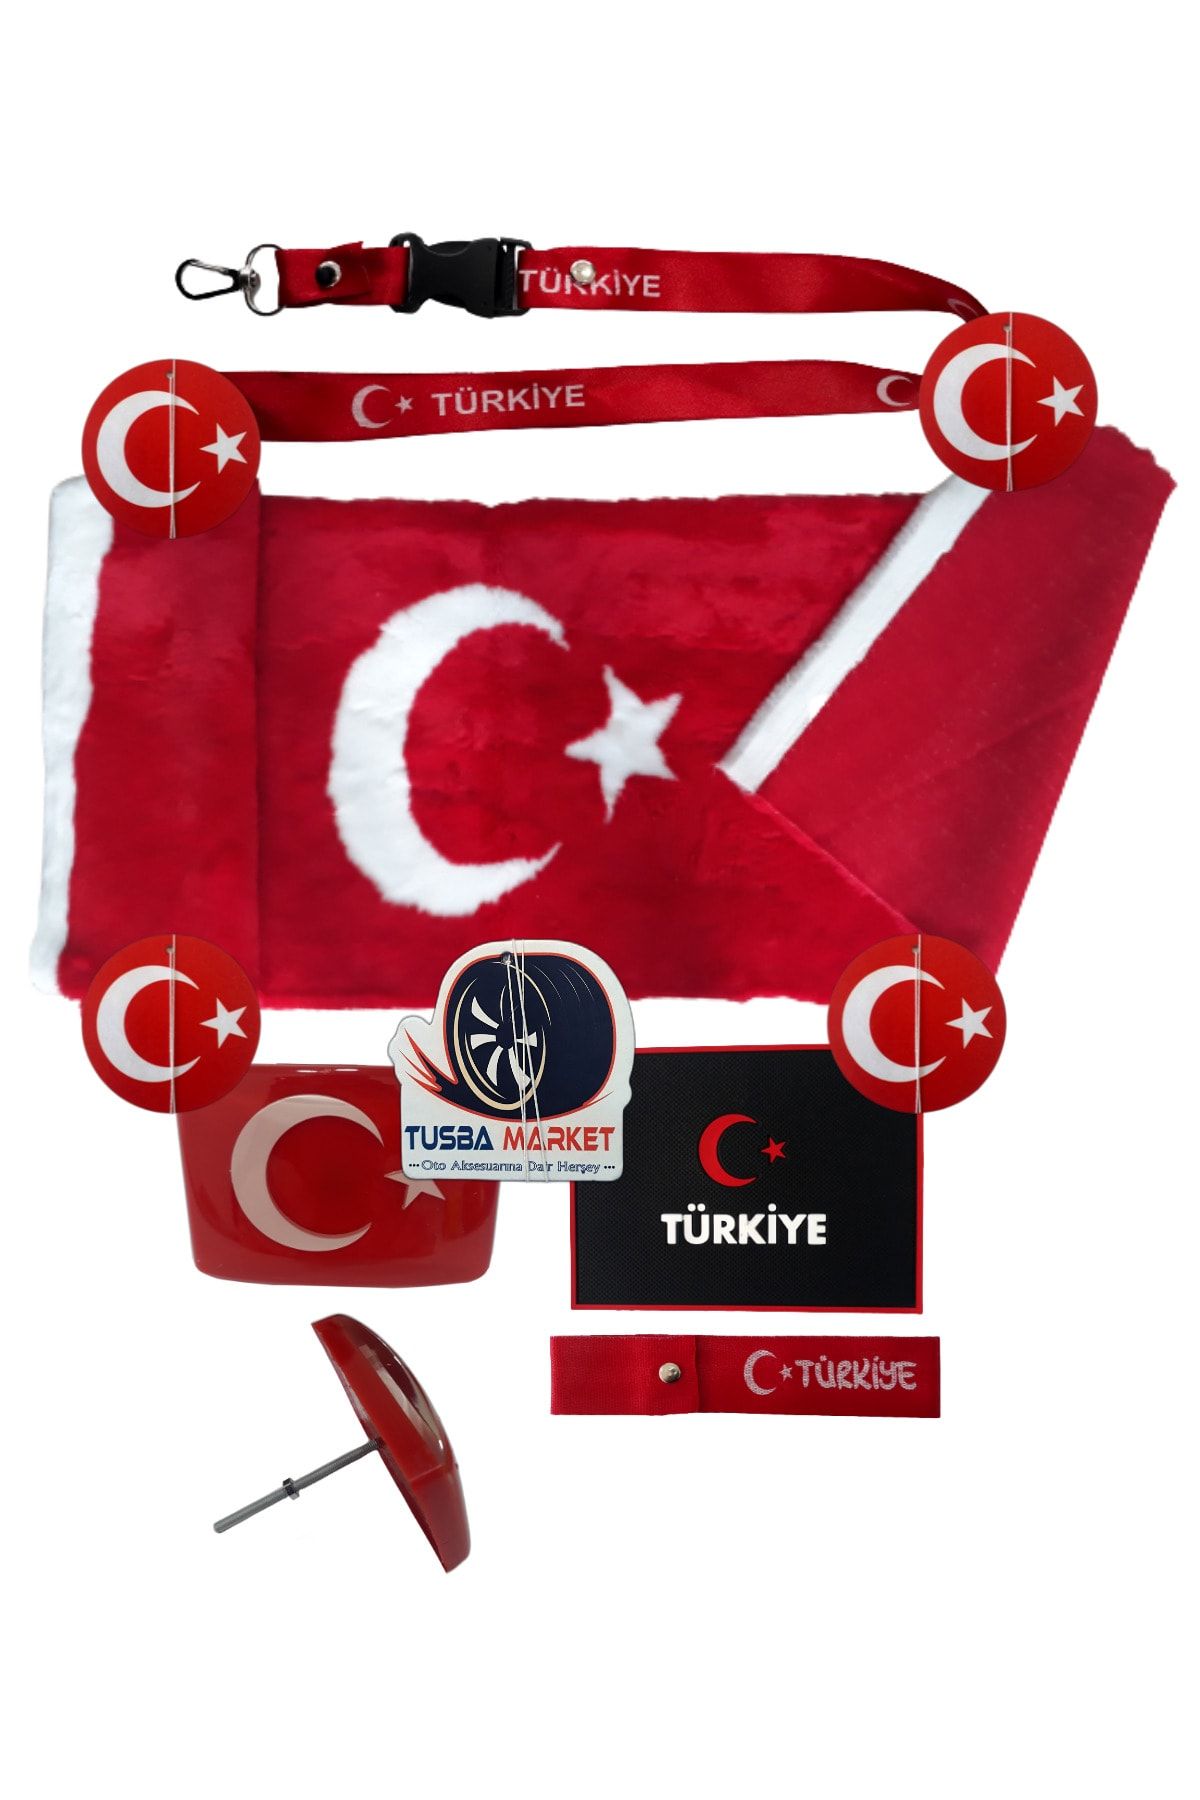 TUSBA MARKET Türk Bayrak'lı Pandizot Torpido Koruması Ayyıldız Pelüş Örtü Halı / Türk Bayrak'lı Araç Oto Aksesuar